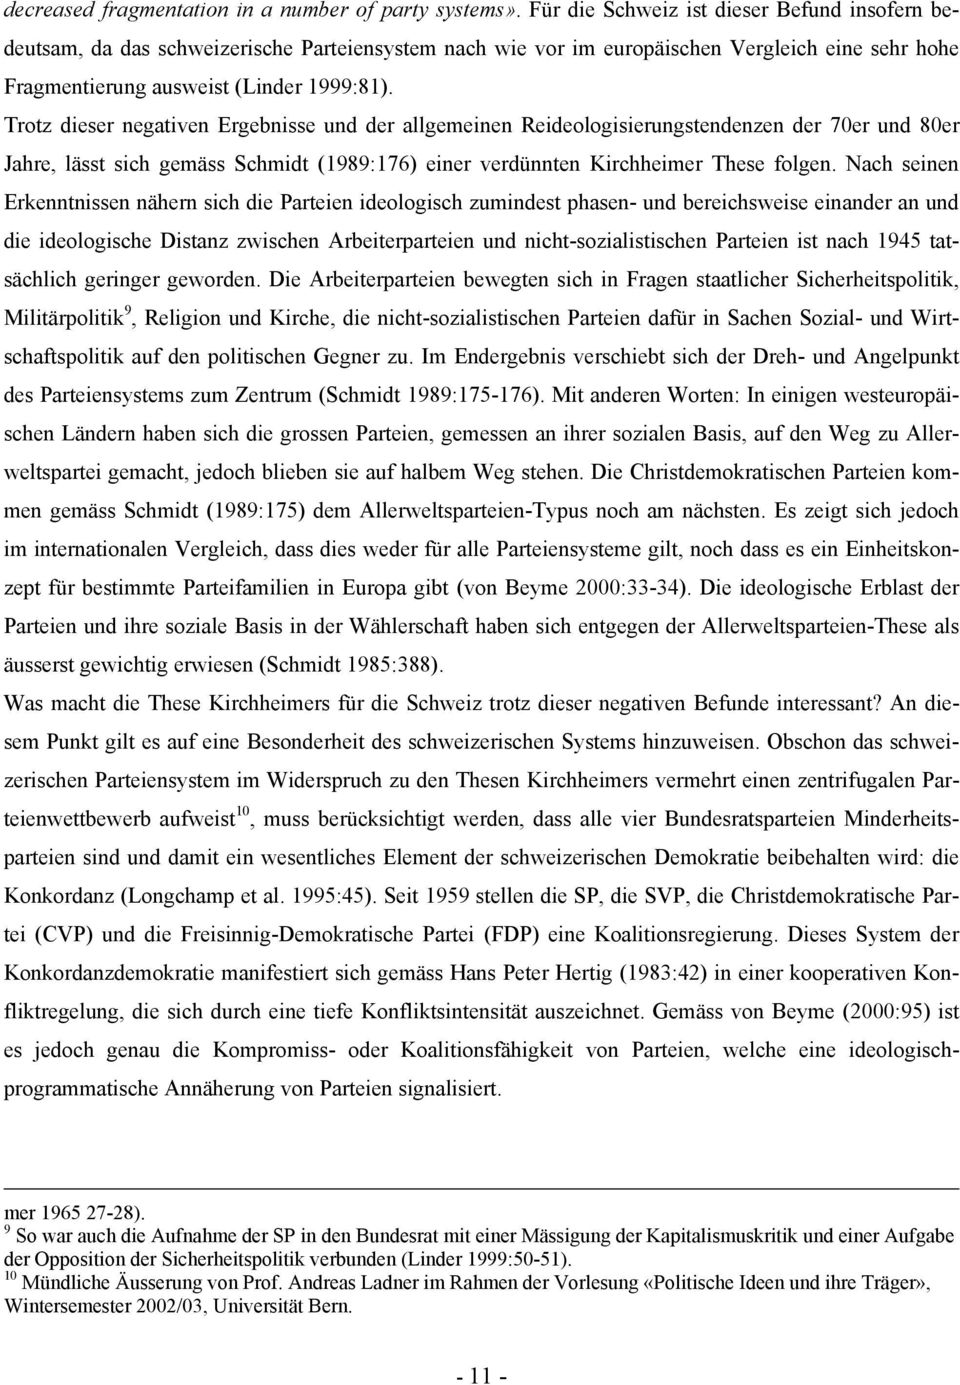 Trotz dieser negativen Ergebnisse und der allgemeinen Reideologisierungstendenzen der 70er und 80er Jahre, lässt sich gemäss Schmidt (1989:176) einer verdünnten Kirchheimer These folgen.